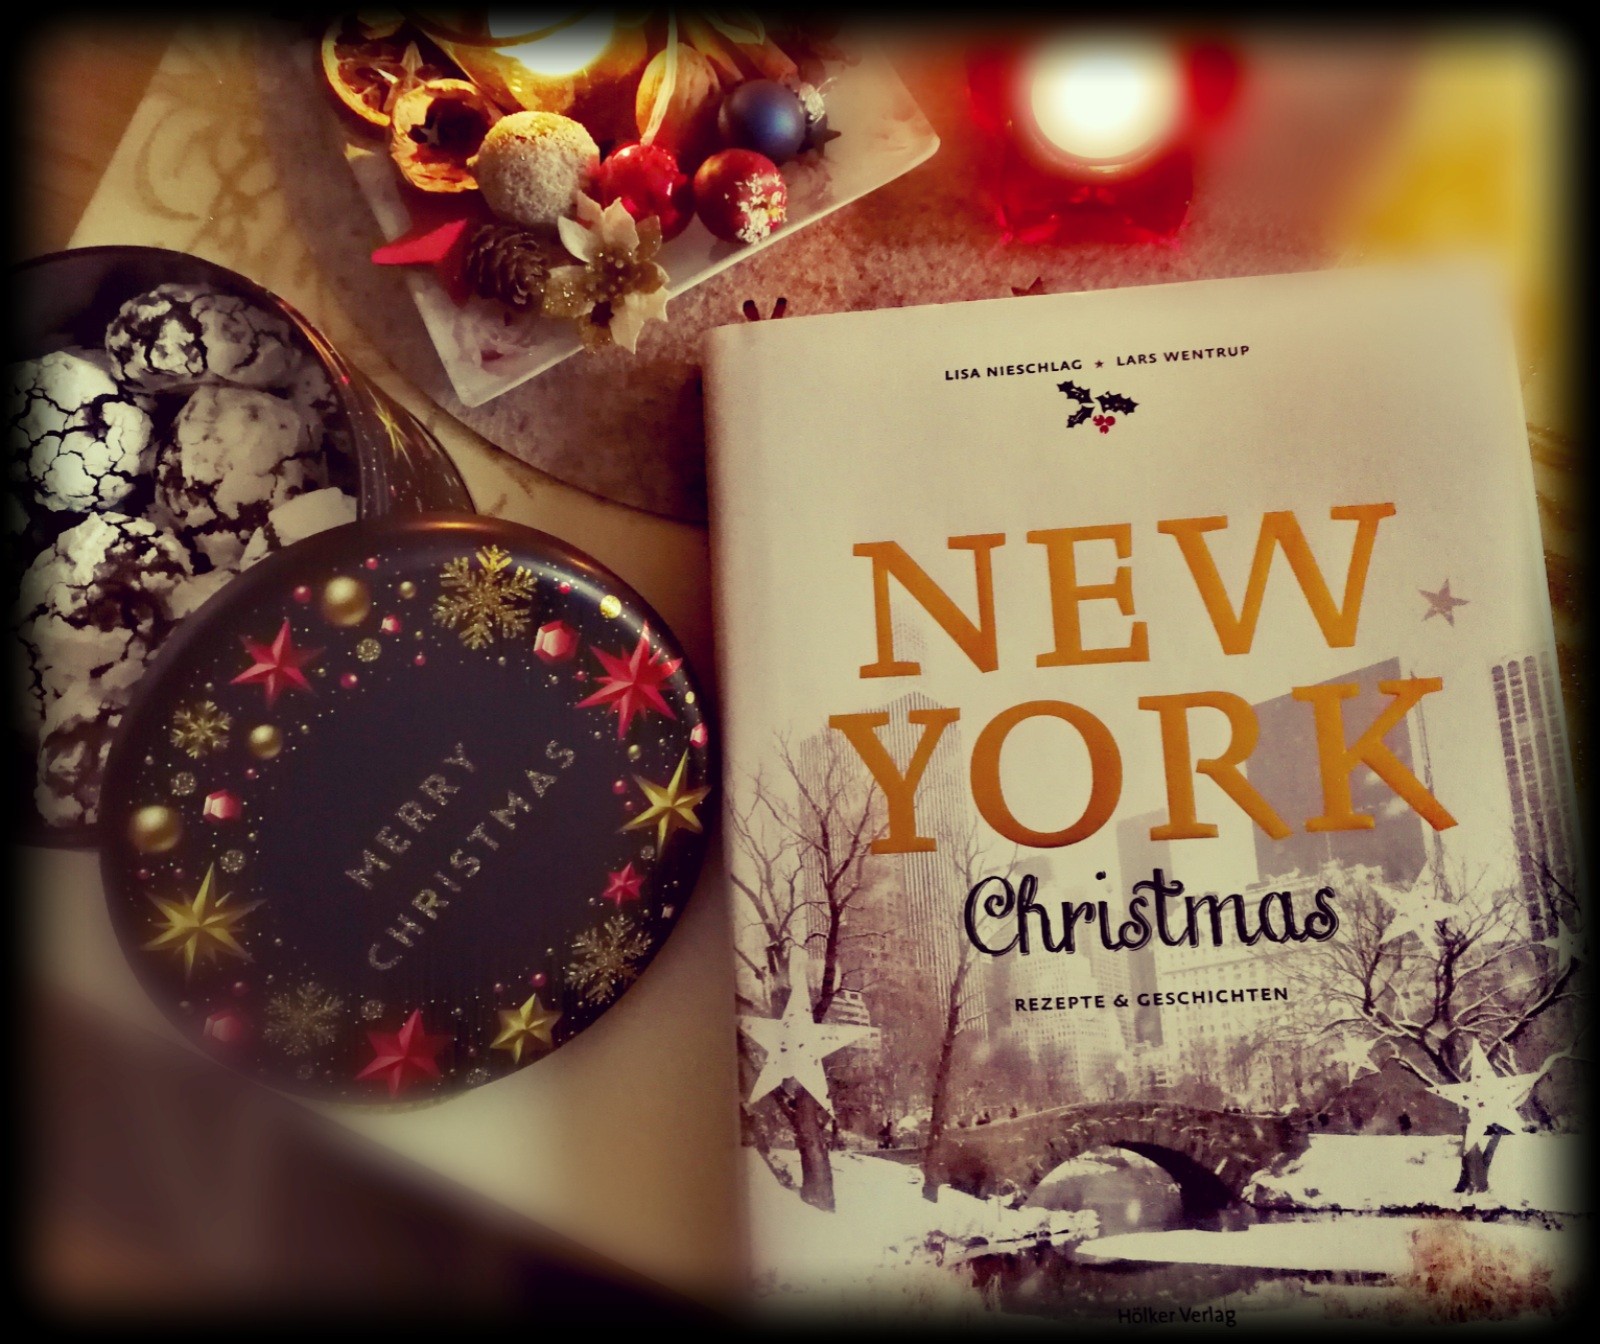 „New York Christmas – Rezepte & Geschichten“ von Lisa Nieschlag und Lars Wentrup - Ein Hauch weihnachtlichen New Yorker Geschmacks